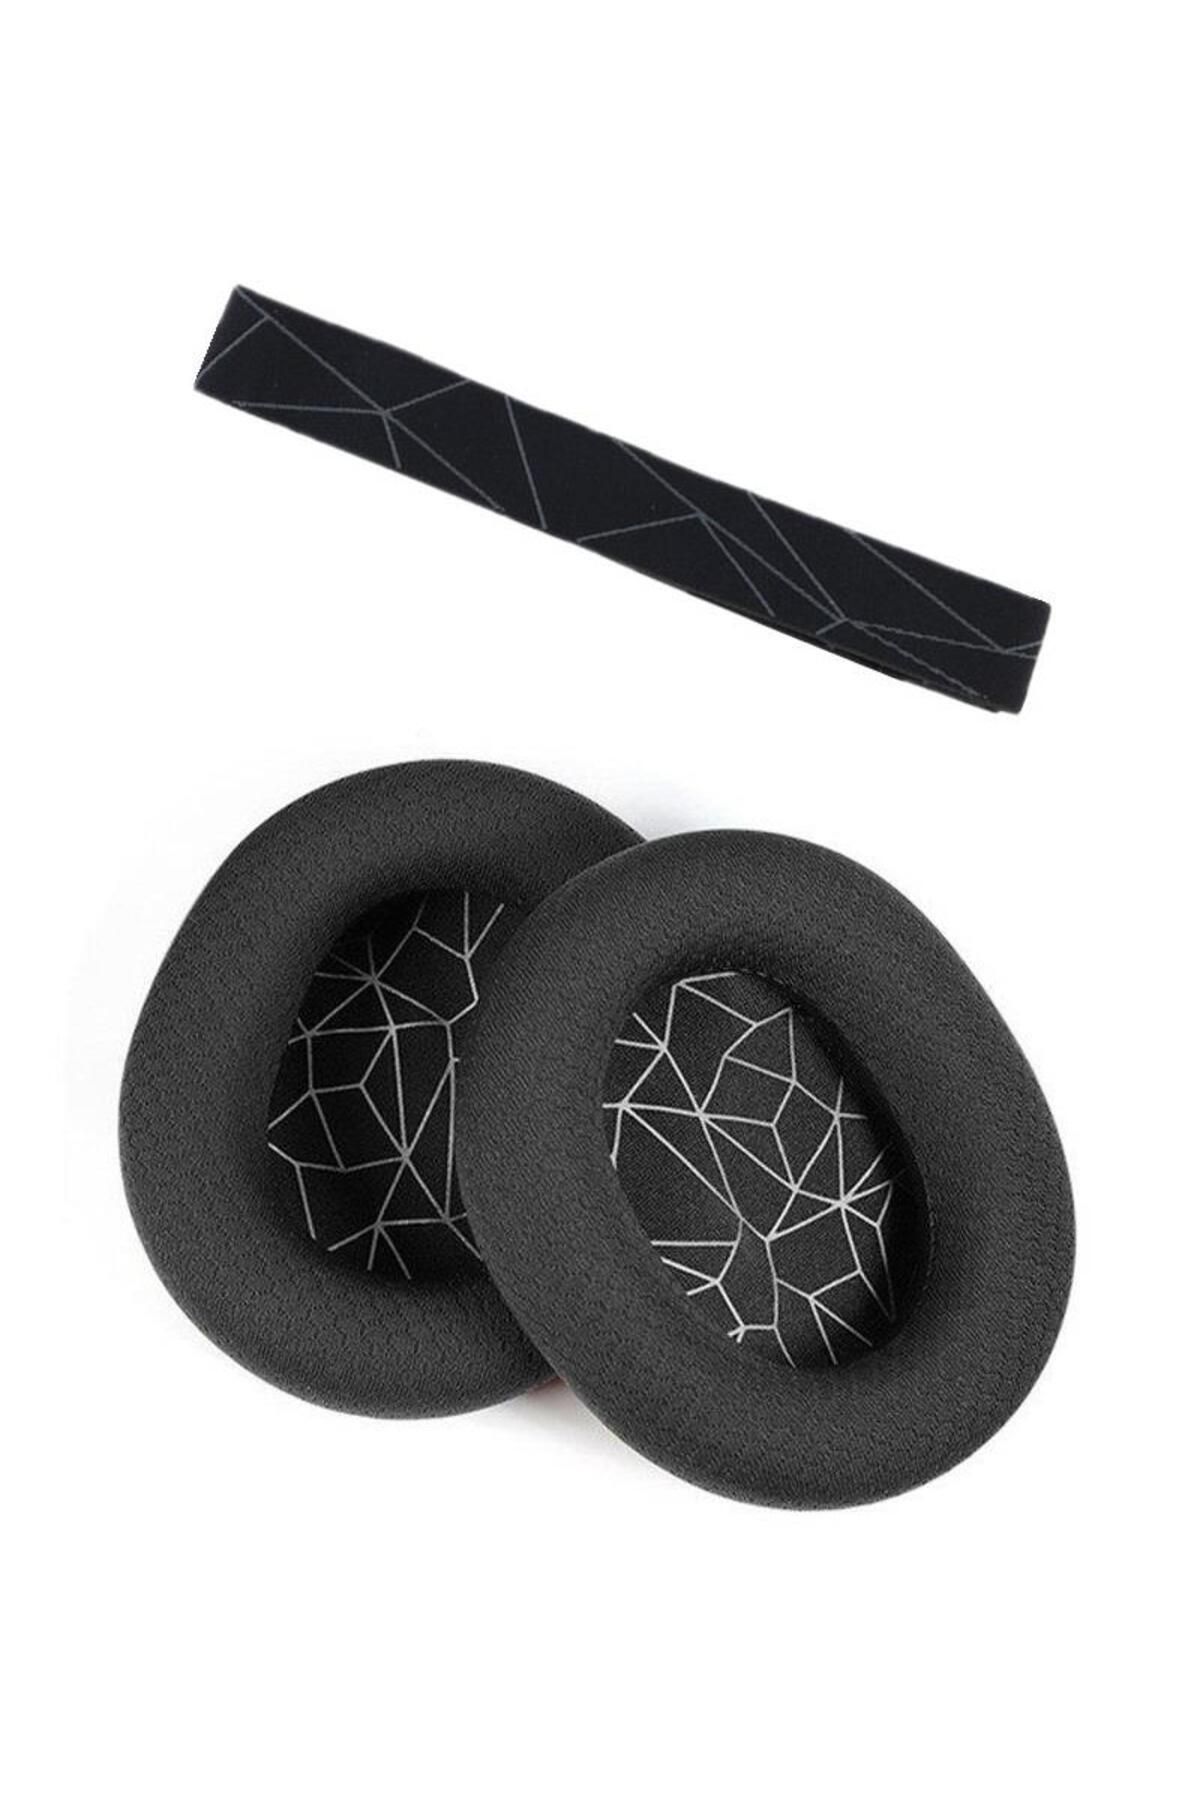 Schulzz Arctis 1 7 9 Yedek Kafa Bandı Ve Kulaklık Pedi Set Kulaklık Yastığı Süngeri Headband